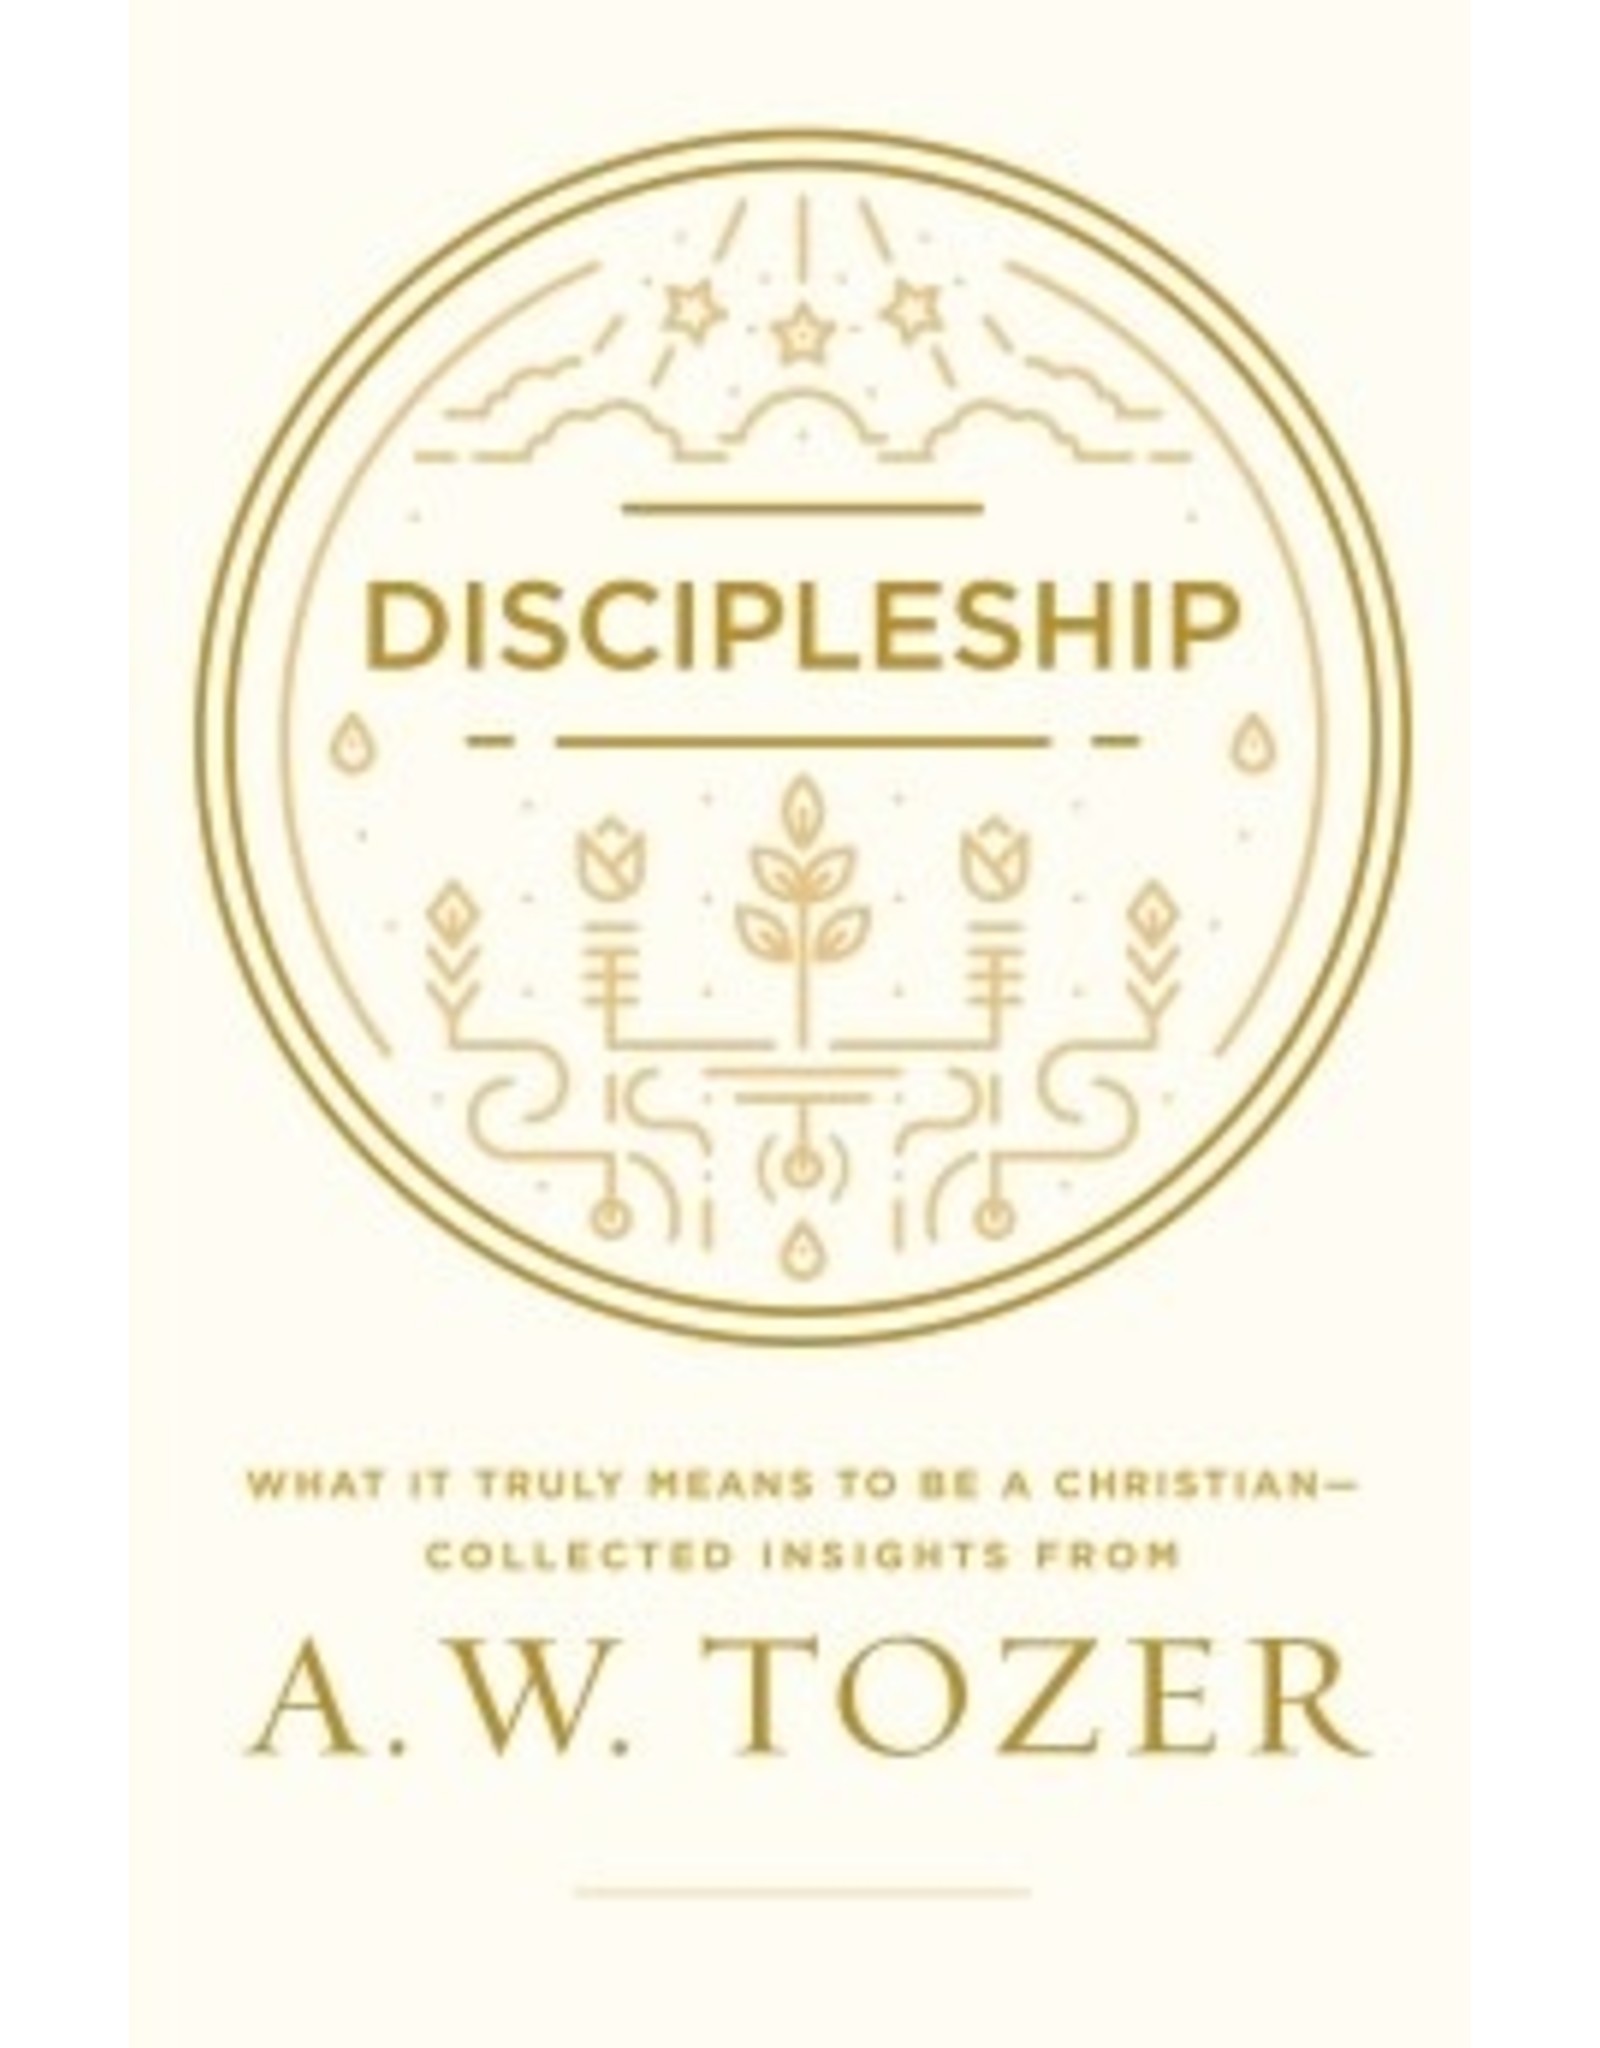 A W Tozer Discipleship